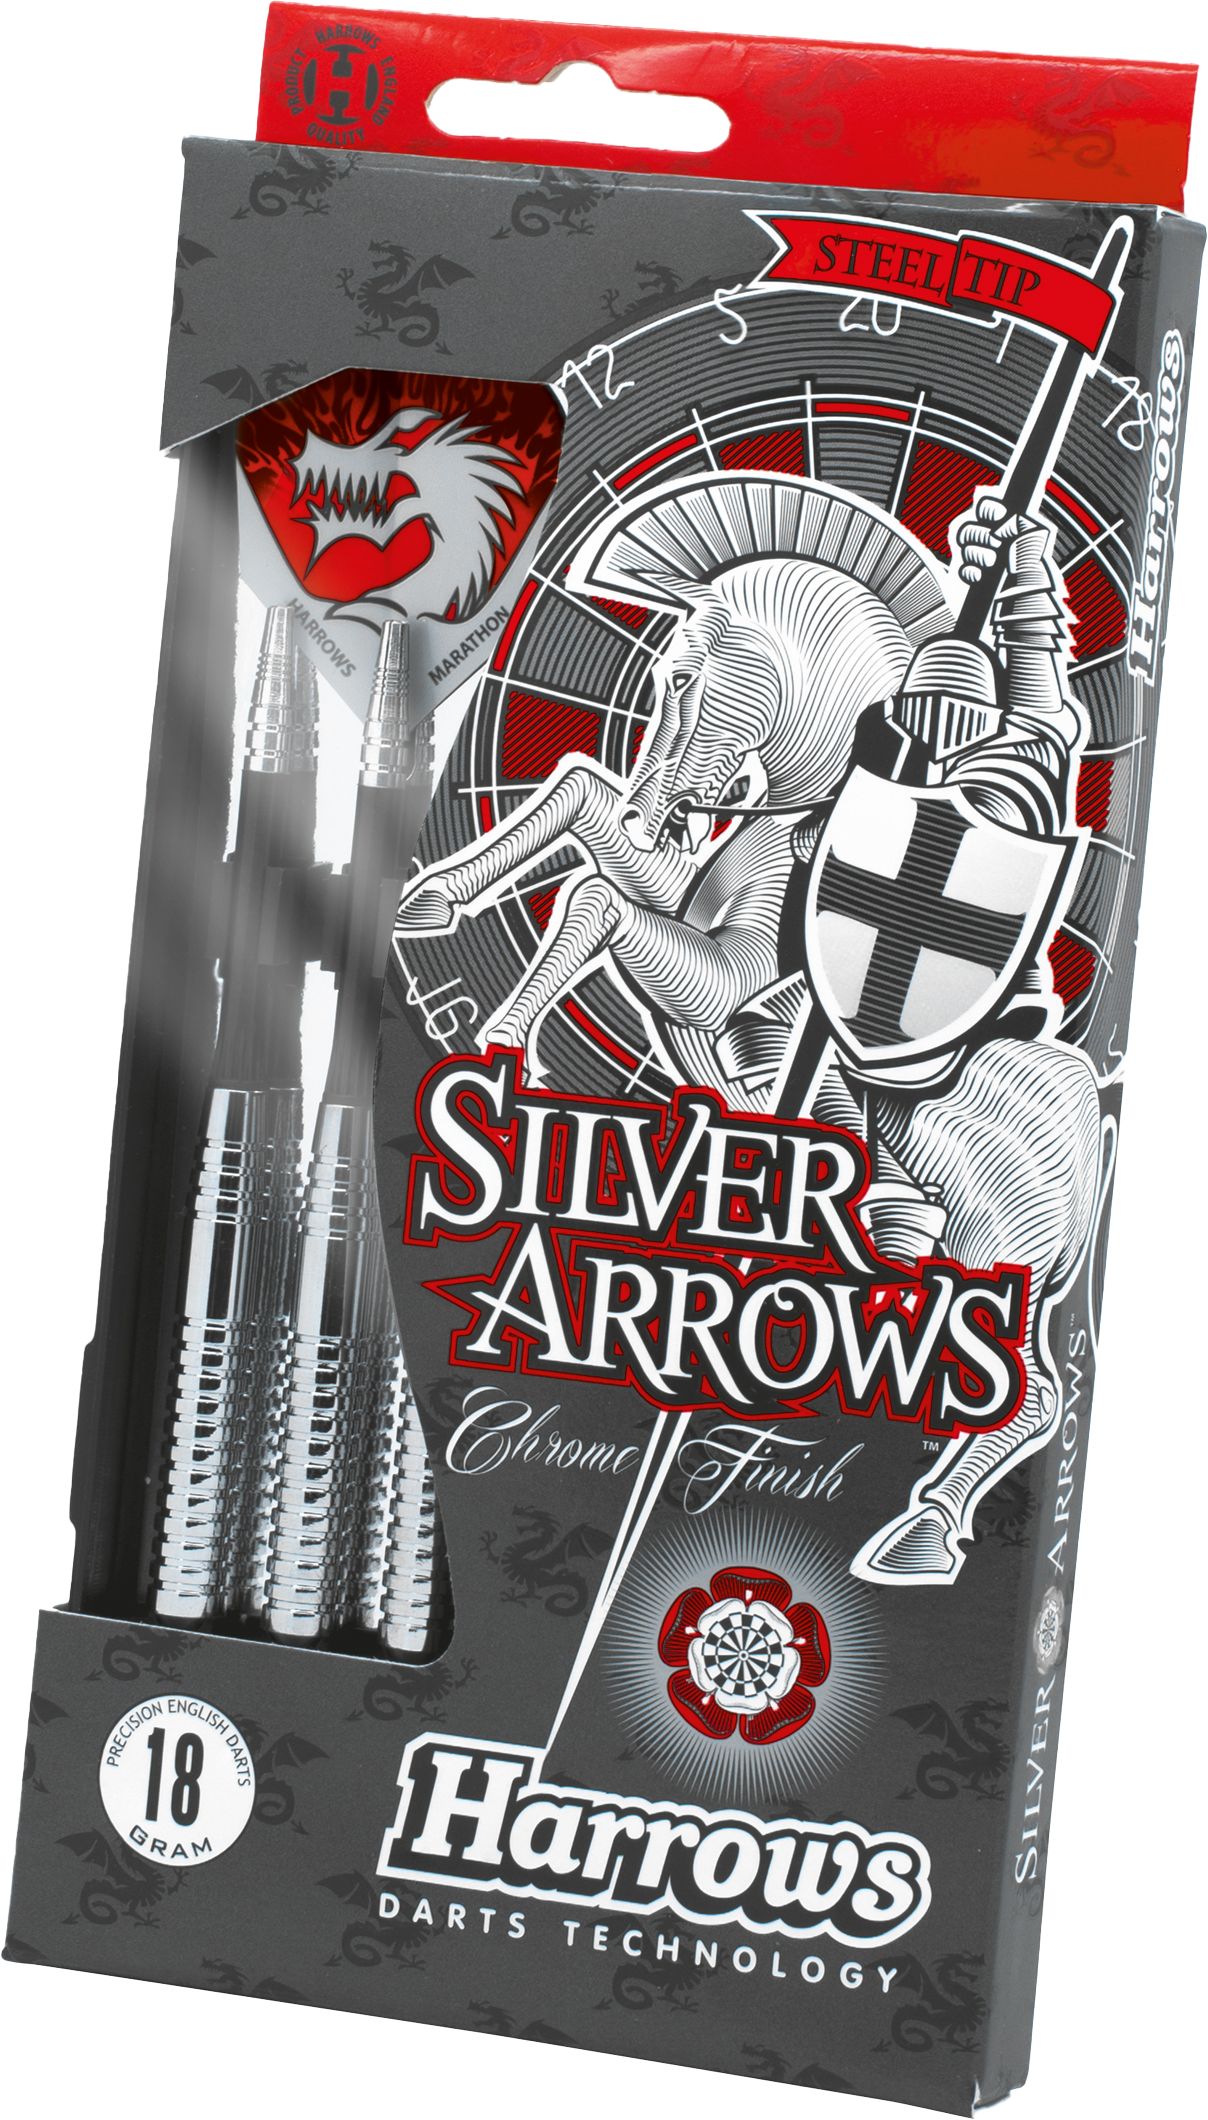 HARROWS, Pil Silverarrow, steel tip